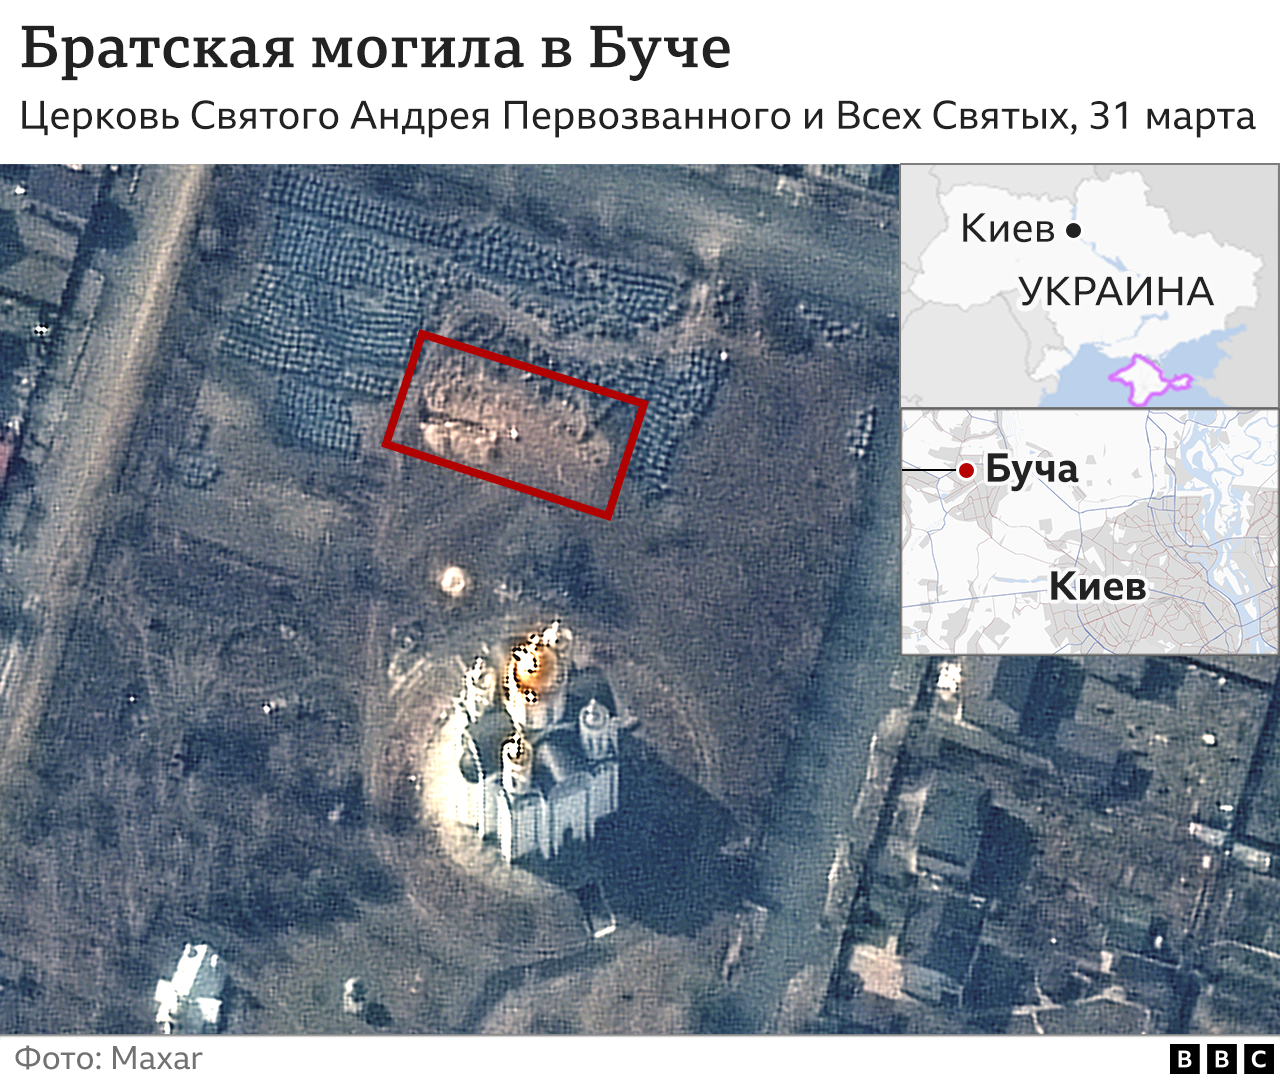 Спутниковый снимок могилы в Буче